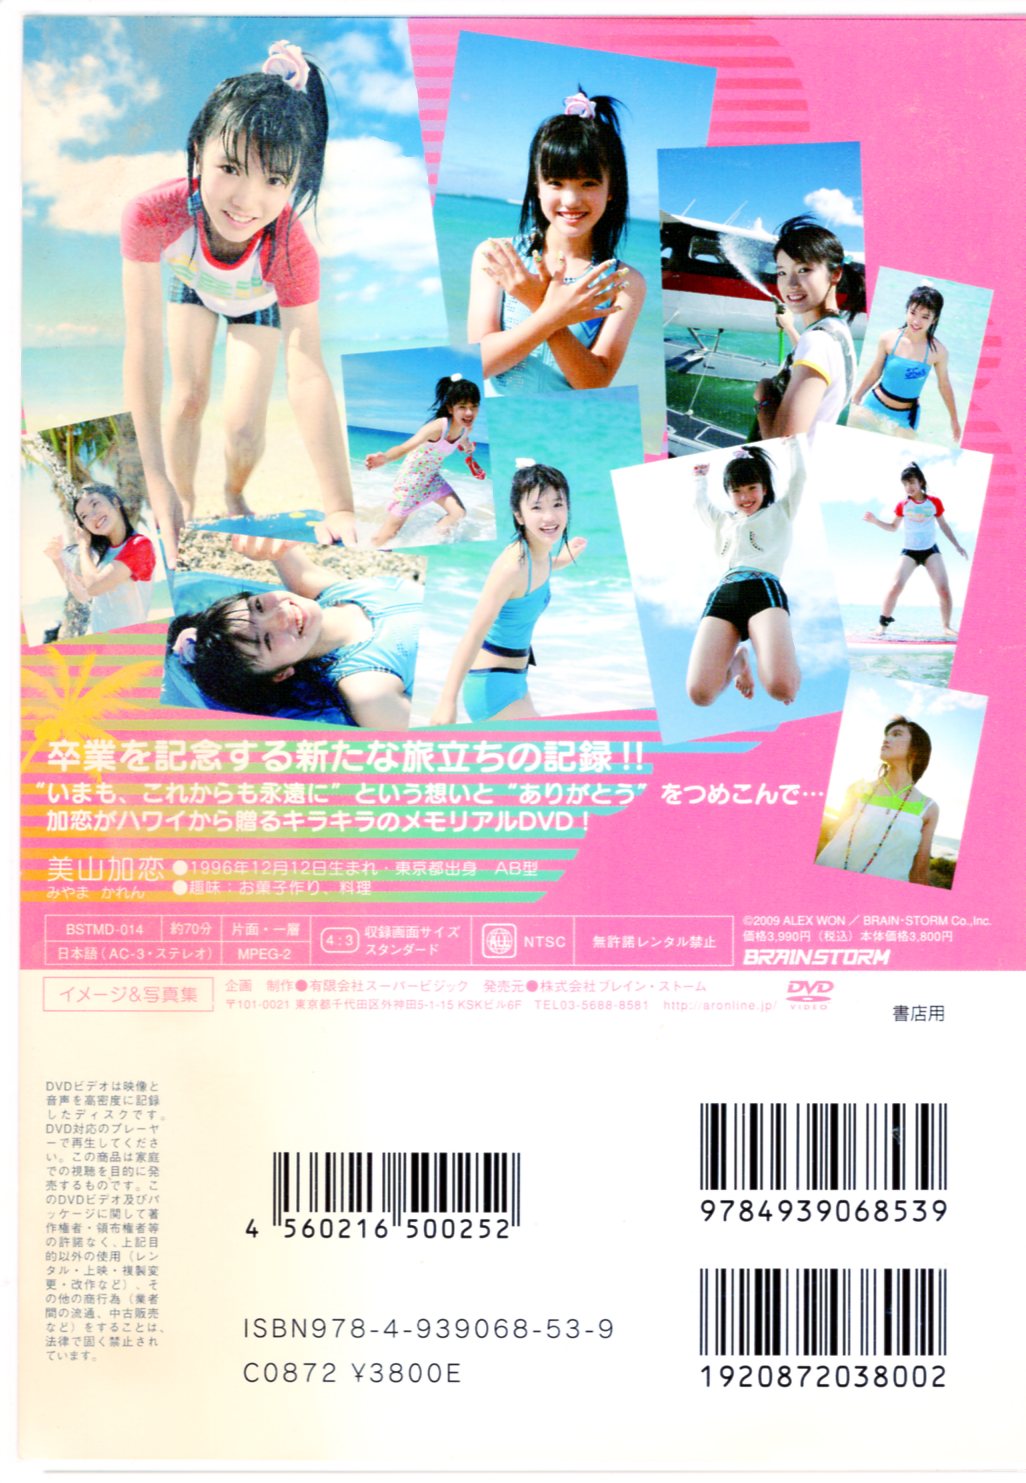 DVD 美山加恋 2nd DVD no na kau a kau ノナ カウ ア カウ～いまも 